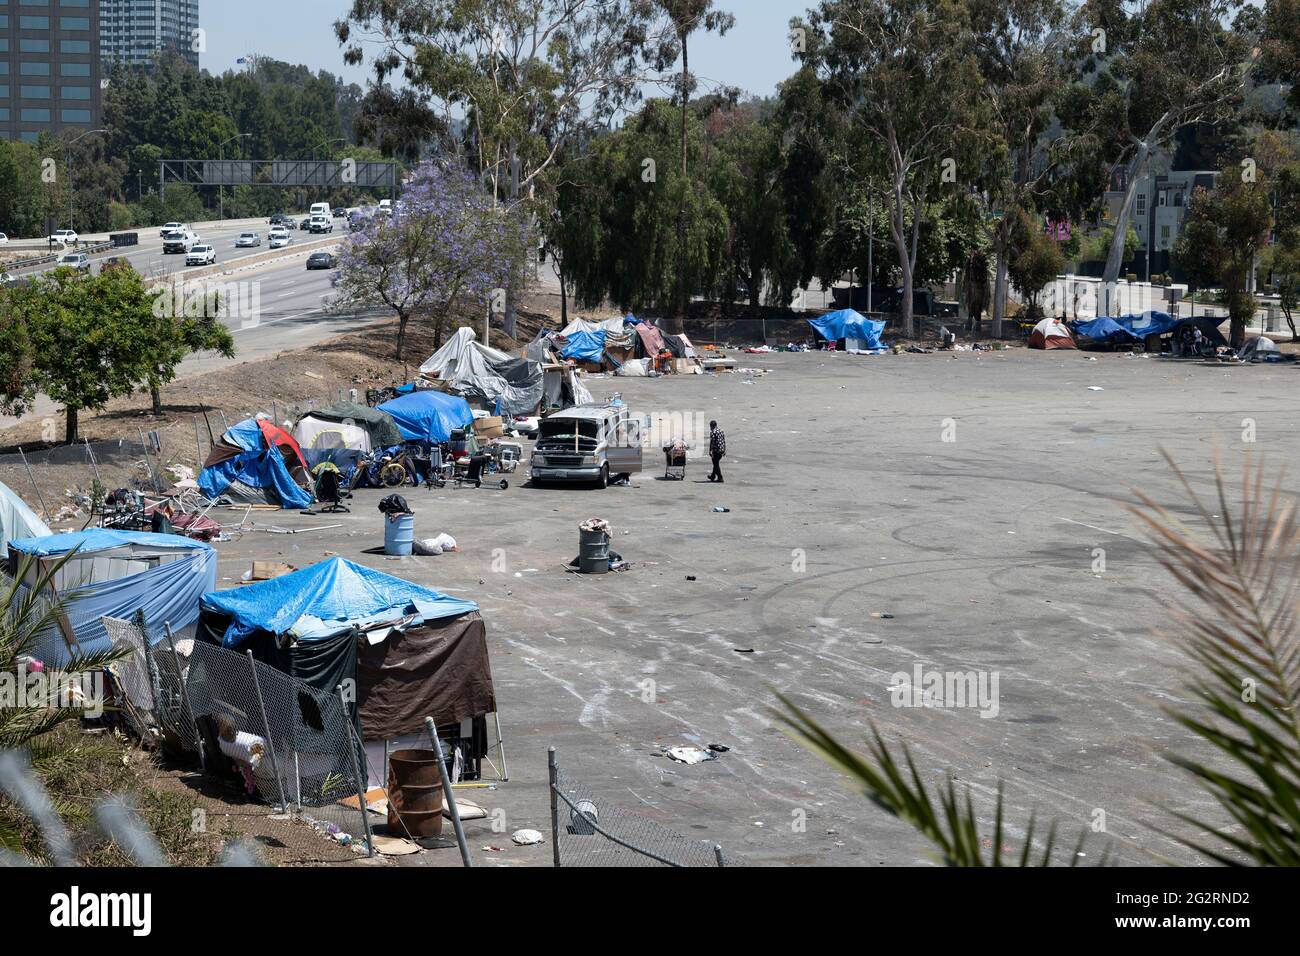 North Hollywood, CA EE.UU. - 28 de mayo de 2021: Campamento sin hogar en un parque y paseo por la autopista Foto de stock